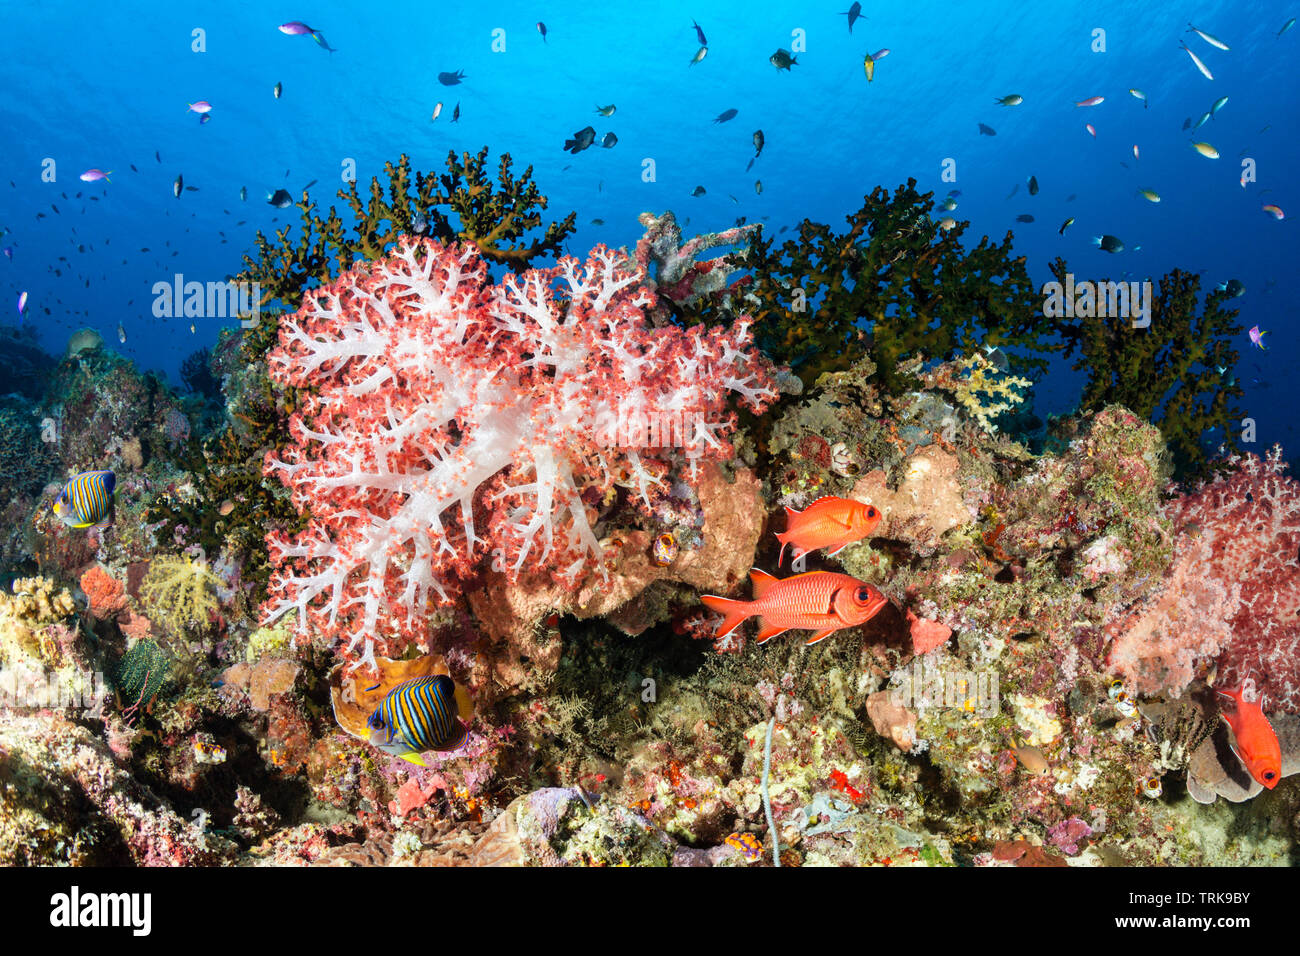 Les coraux mous dans les récifs coralliens, Dendronephthya, Lissenung, New Ireland, Papouasie Nouvelle Guinée Banque D'Images